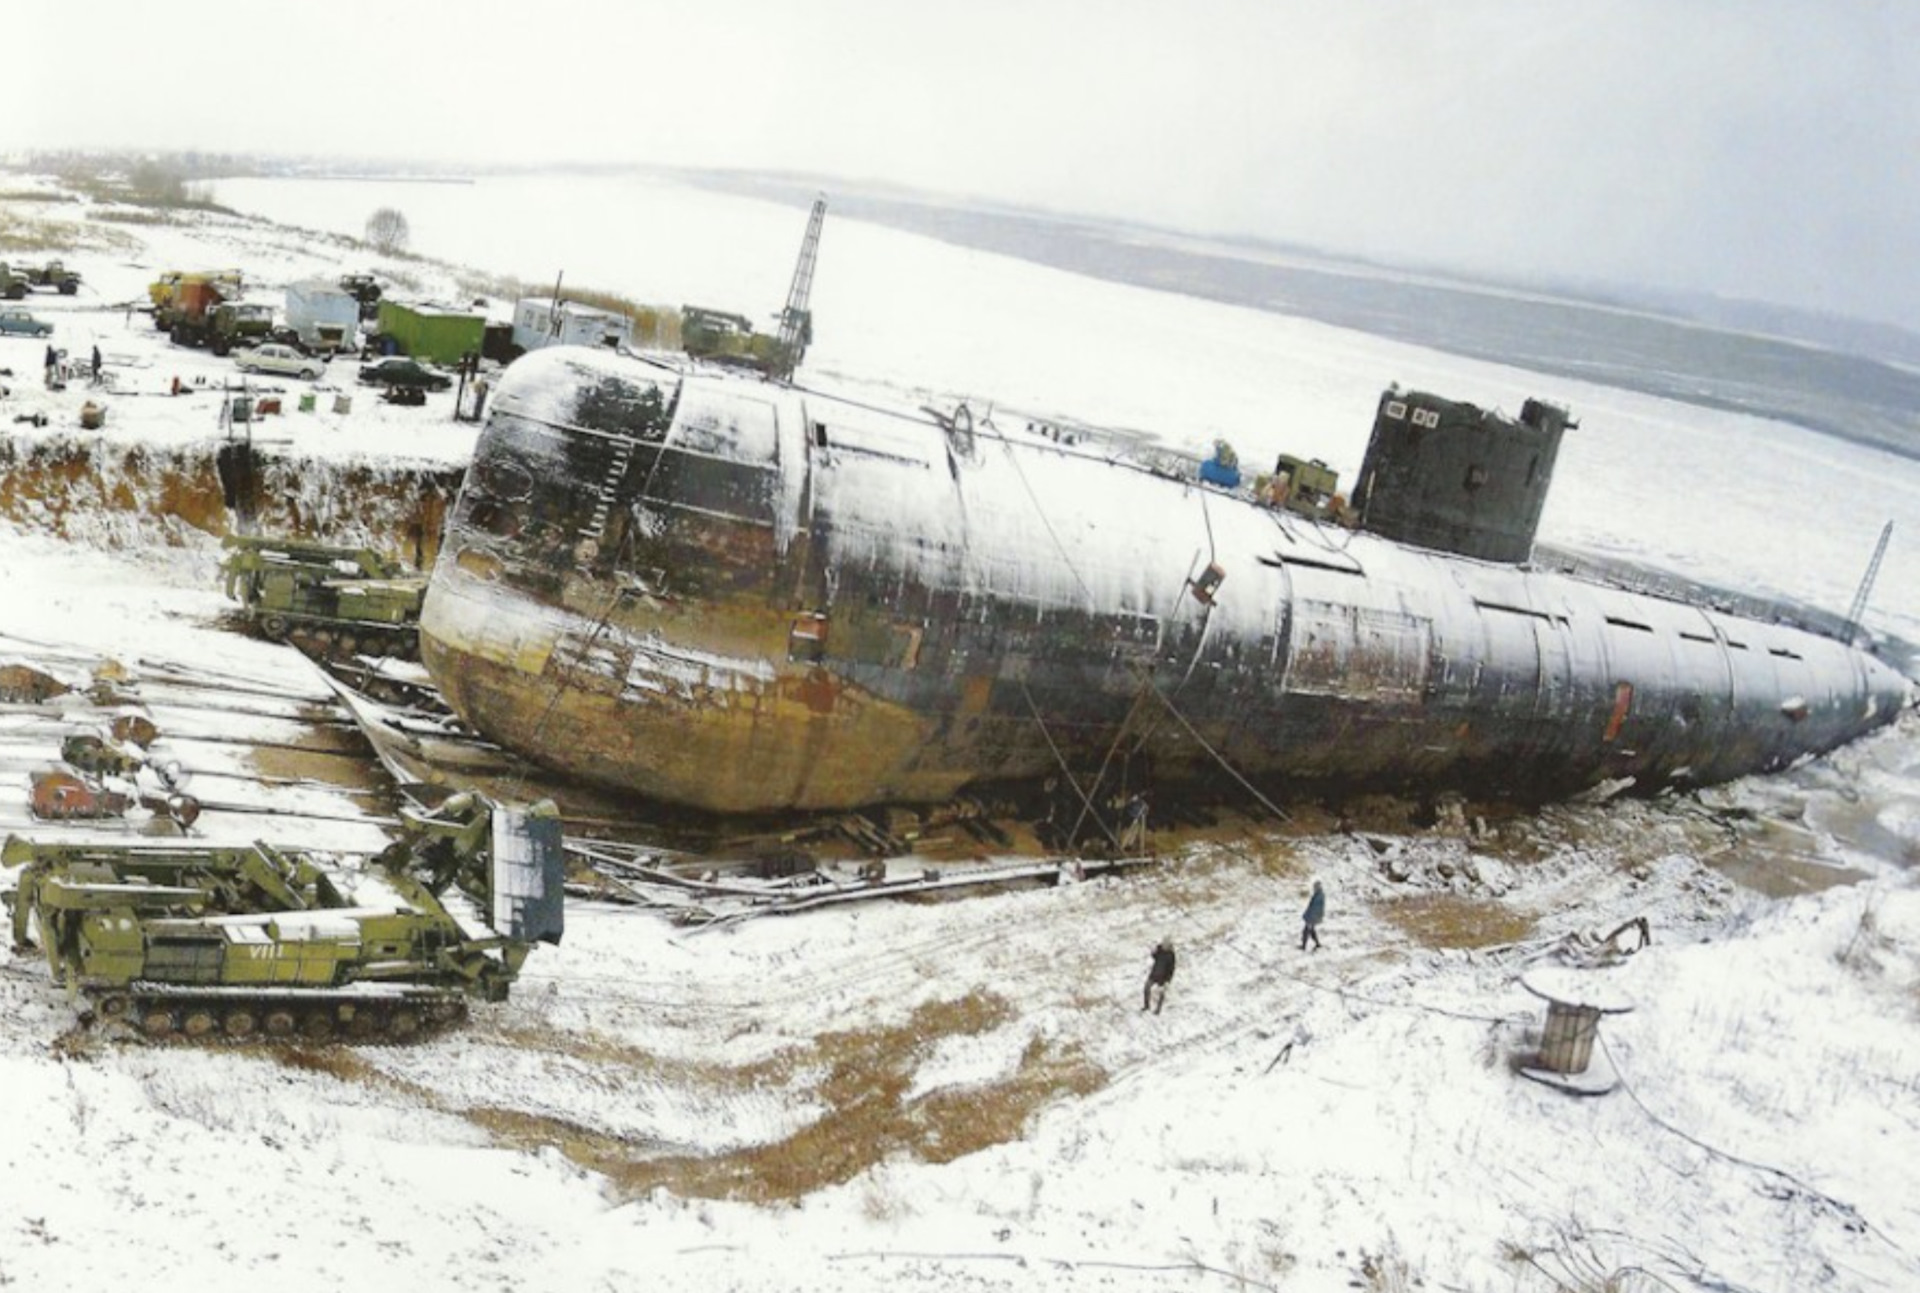 Подводная лодка 641Б «Сом» вытащенная в поле. Невероятное зрелище 😵💪😵‍💫3